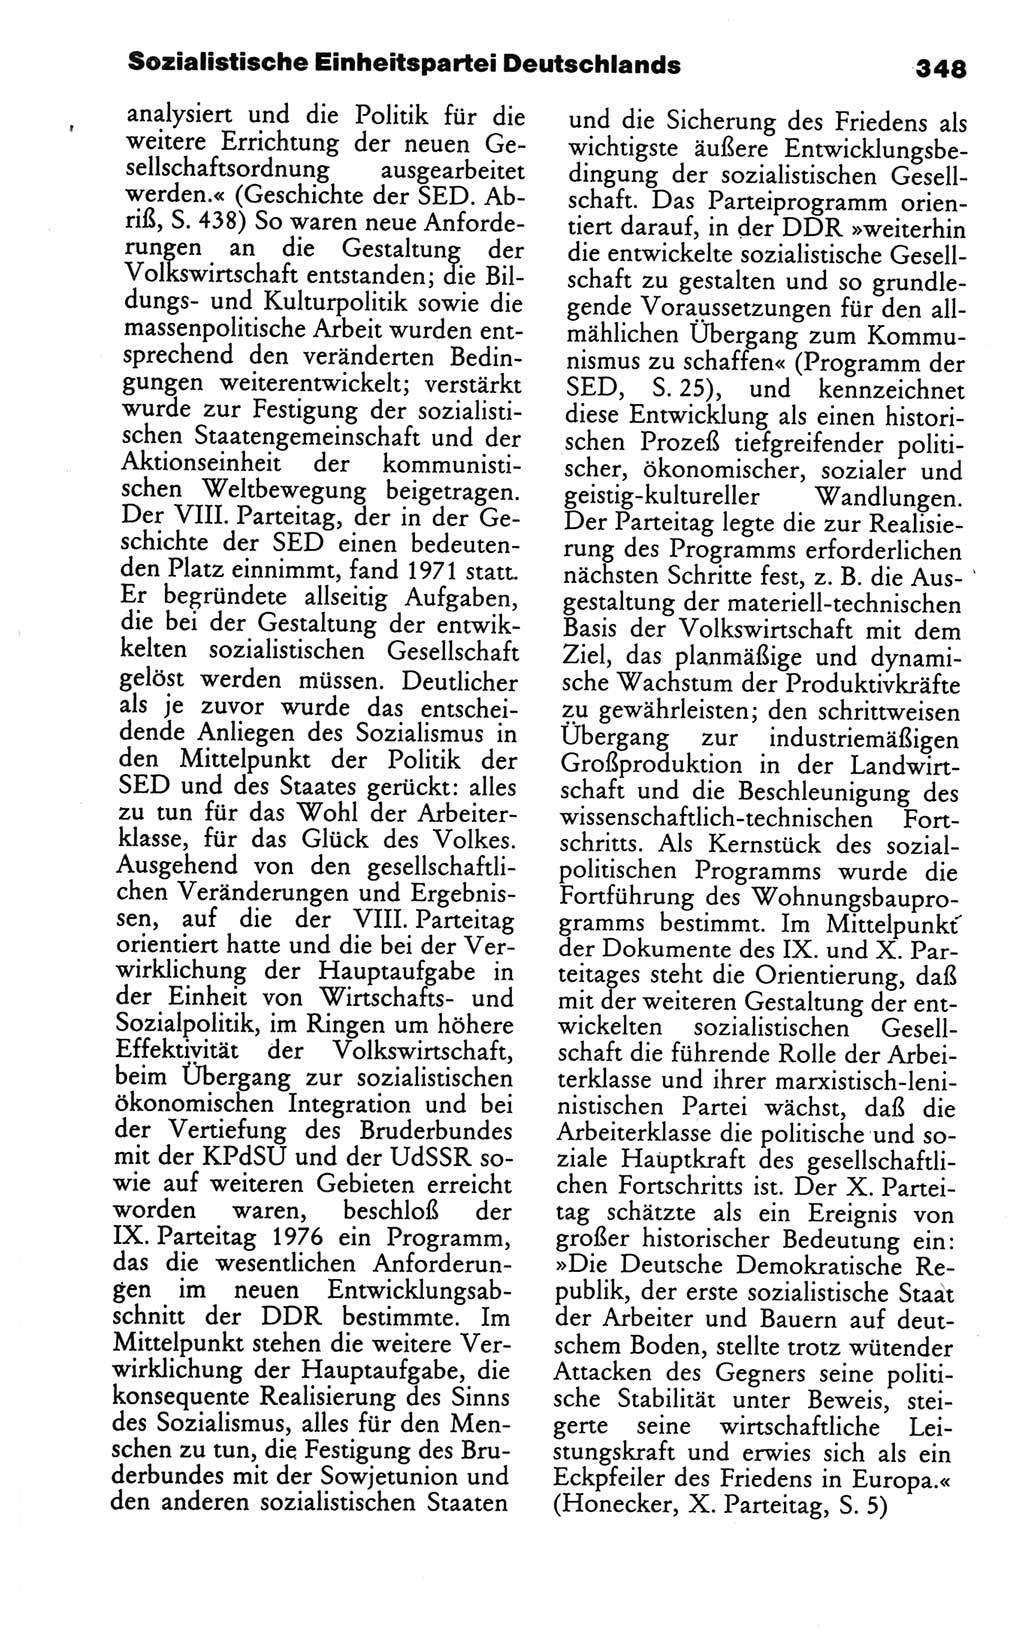 Wörterbuch des wissenschaftlichen Kommunismus [Deutsche Demokratische Republik (DDR)] 1986, Seite 348 (Wb. wiss. Komm. DDR 1986, S. 348)